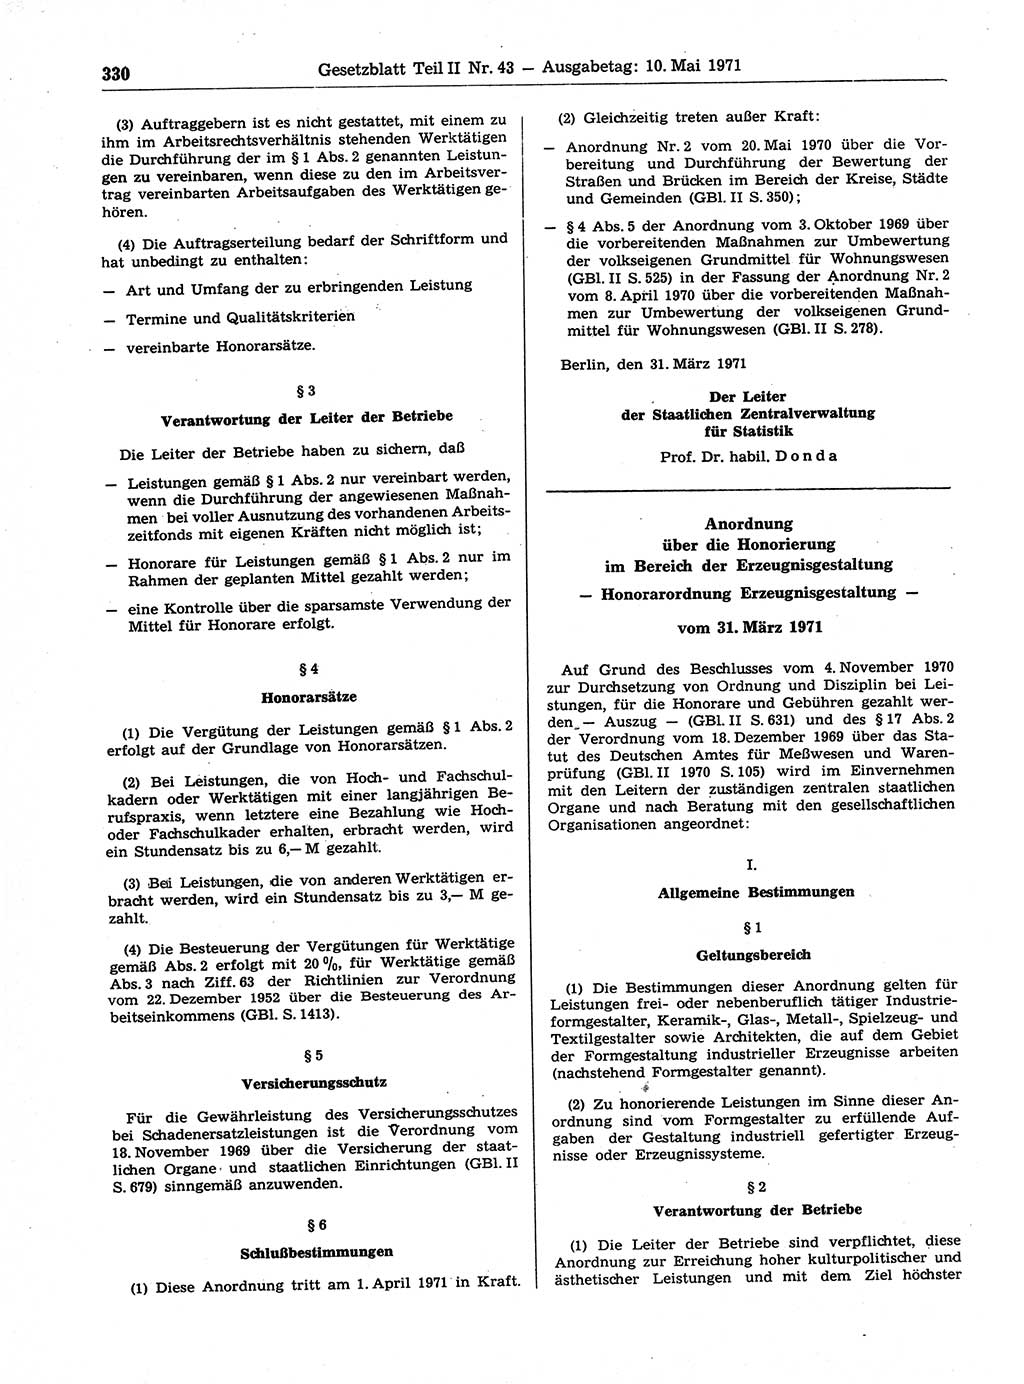 Gesetzblatt (GBl.) der Deutschen Demokratischen Republik (DDR) Teil ⅠⅠ 1971, Seite 330 (GBl. DDR ⅠⅠ 1971, S. 330)